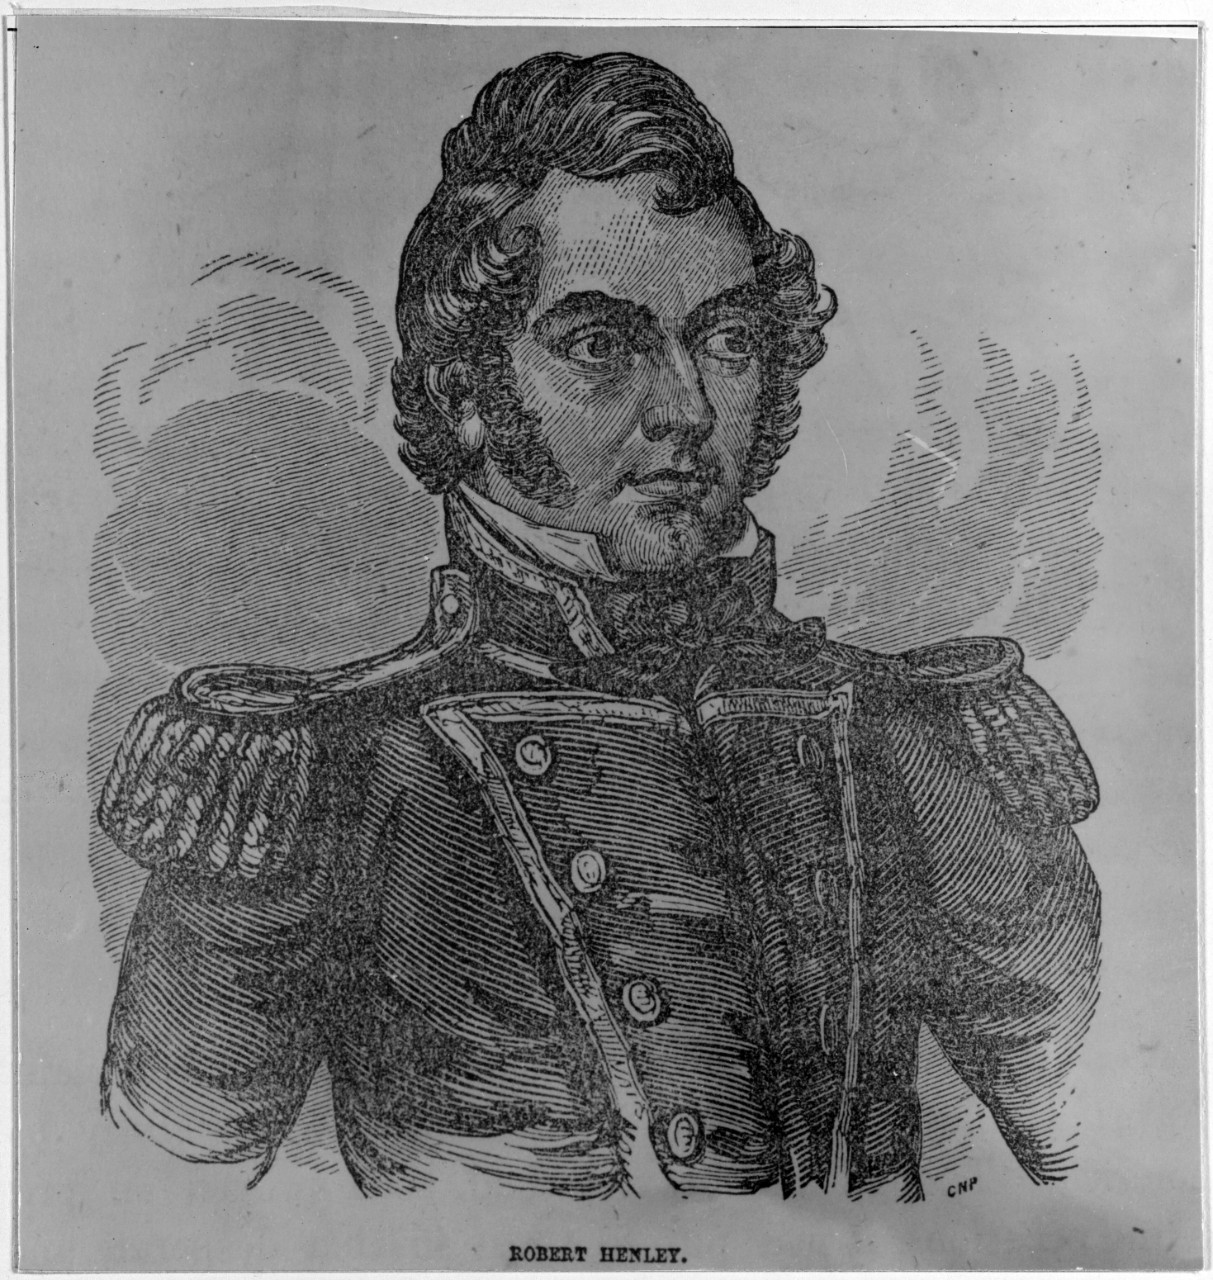 Lieutenant Robert Henley, USN